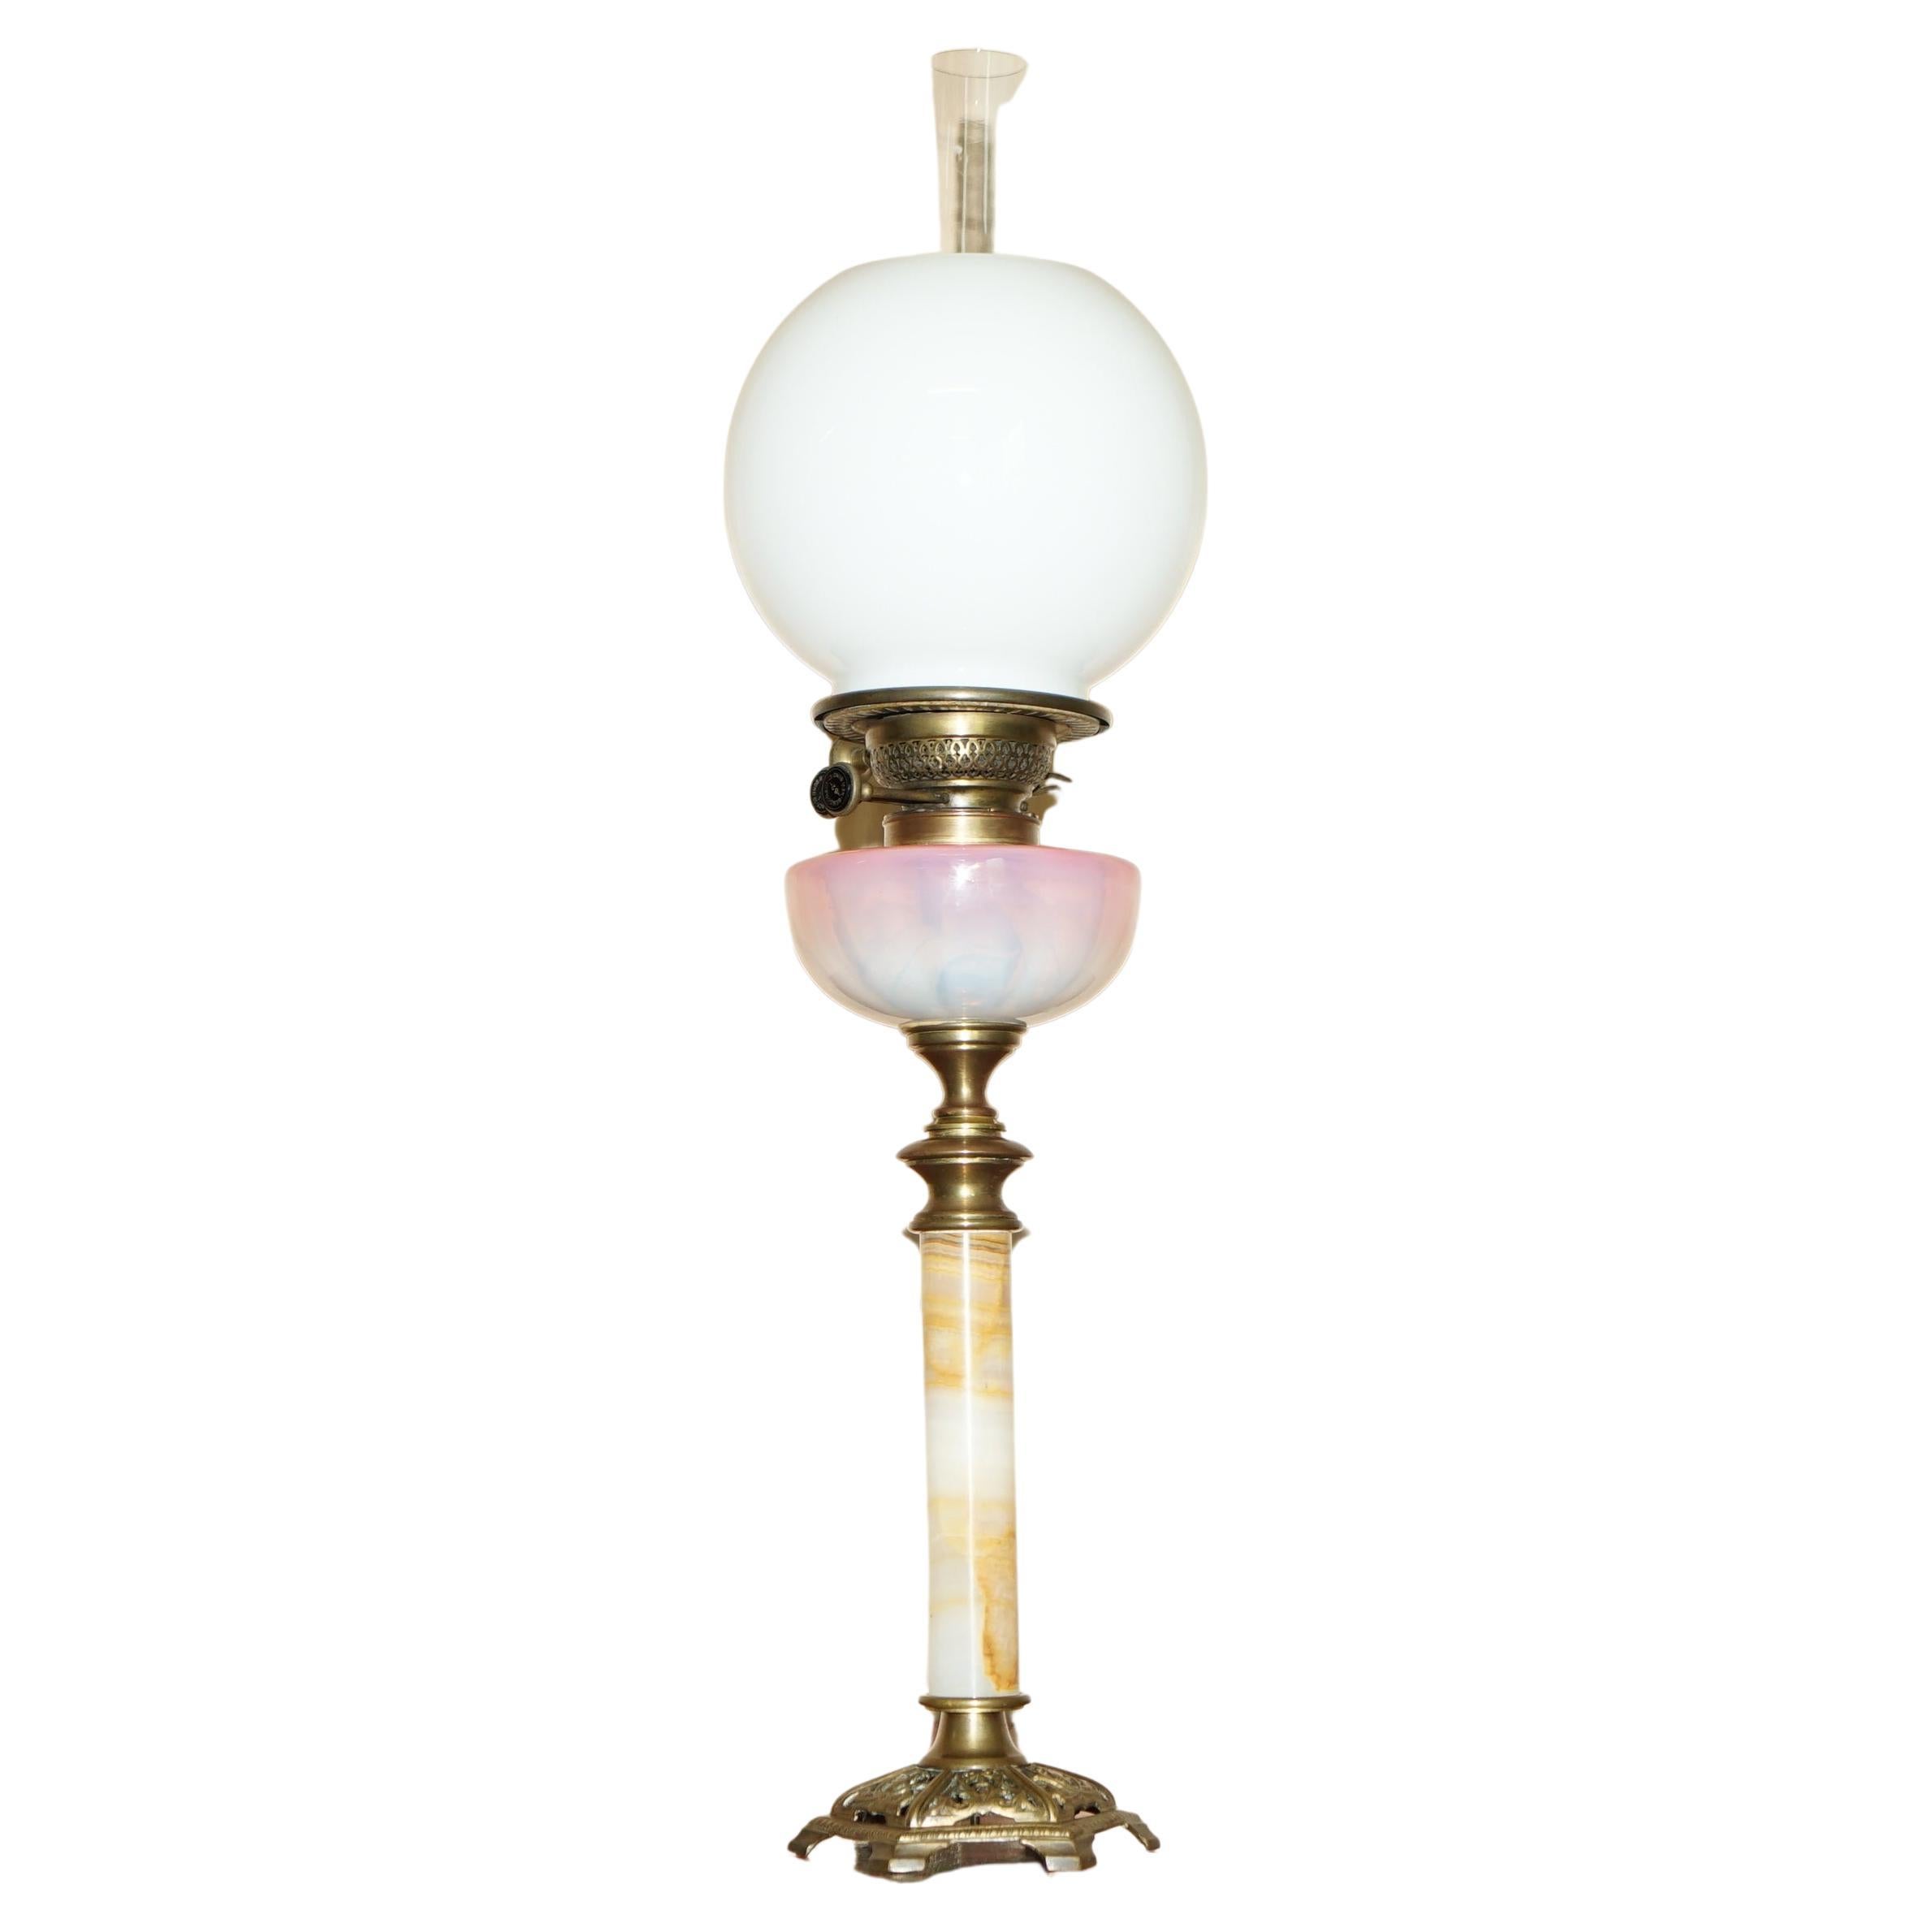 Anitique viktorianische Öllampe mit Onyxfuß und Original-Perlen-Glas-Finish, Ölkuppel